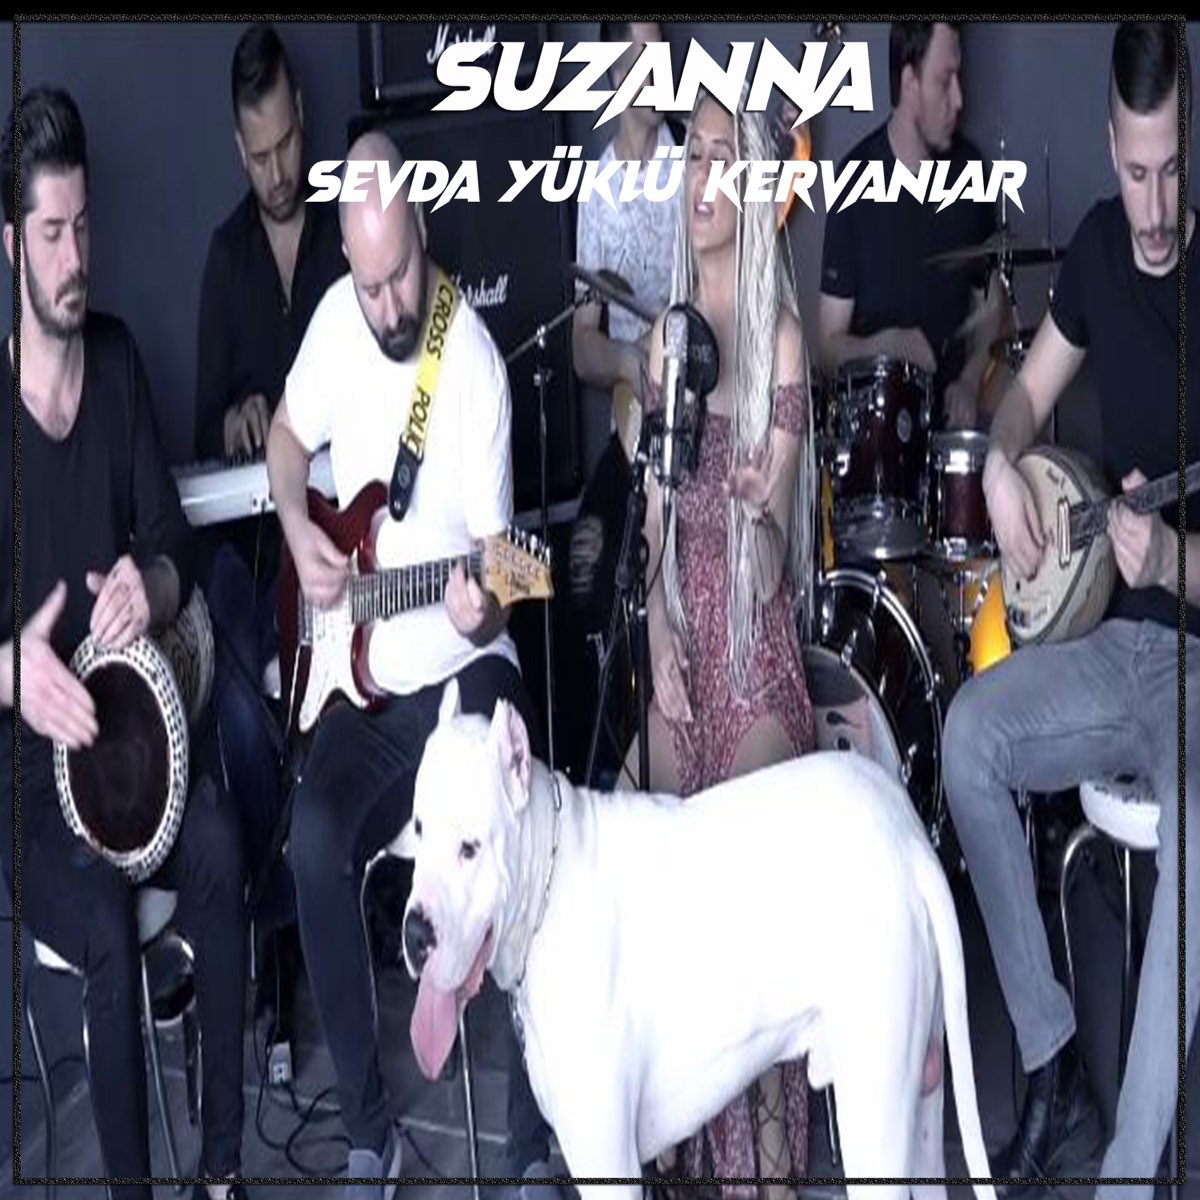 Sevda Yüklü Kervanlar - Single - Album by Suzanna - Apple Music